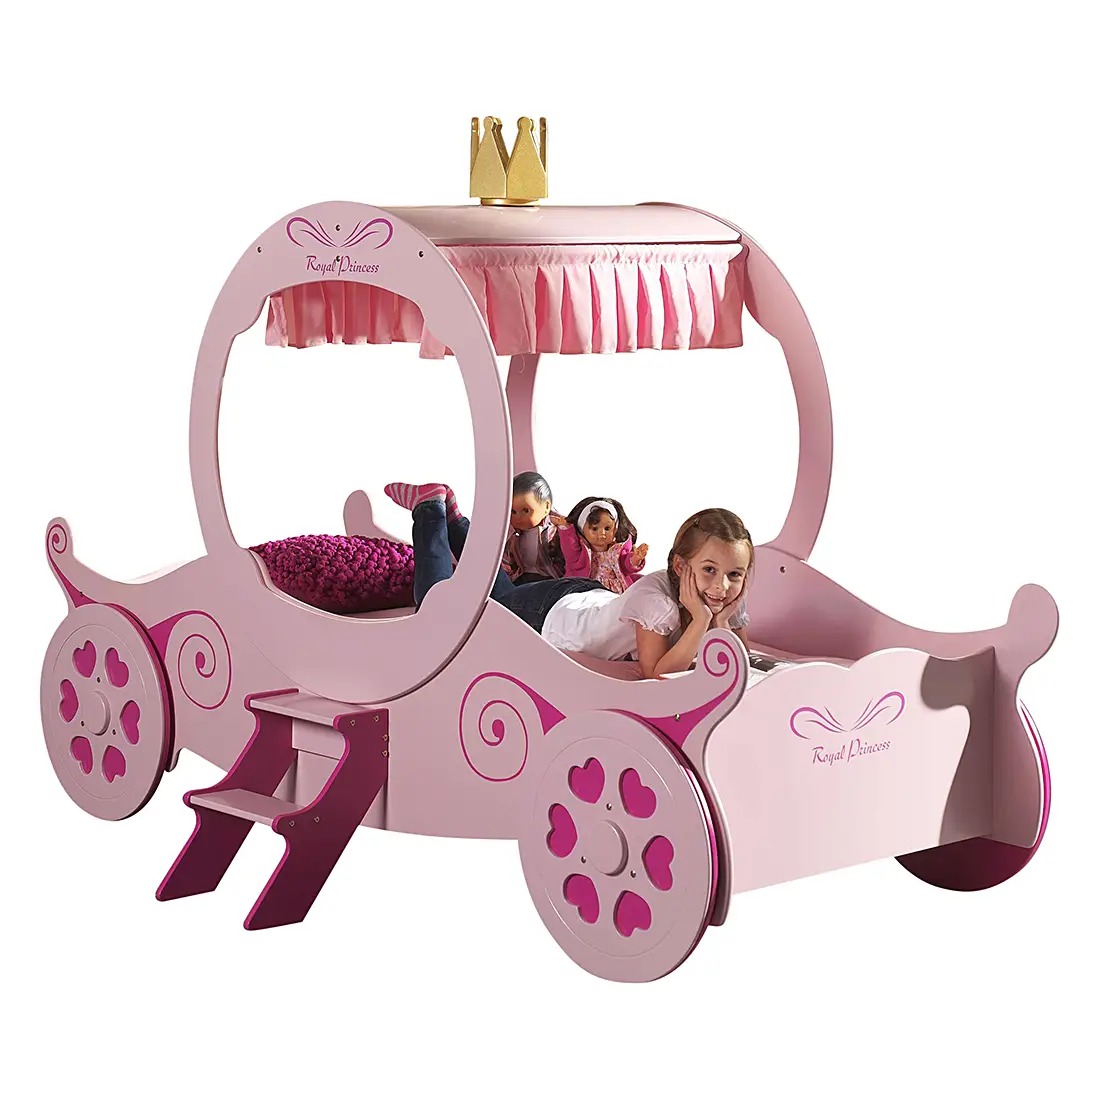 Kutschenbett Royal Princess | Kinder-Einzelbetten